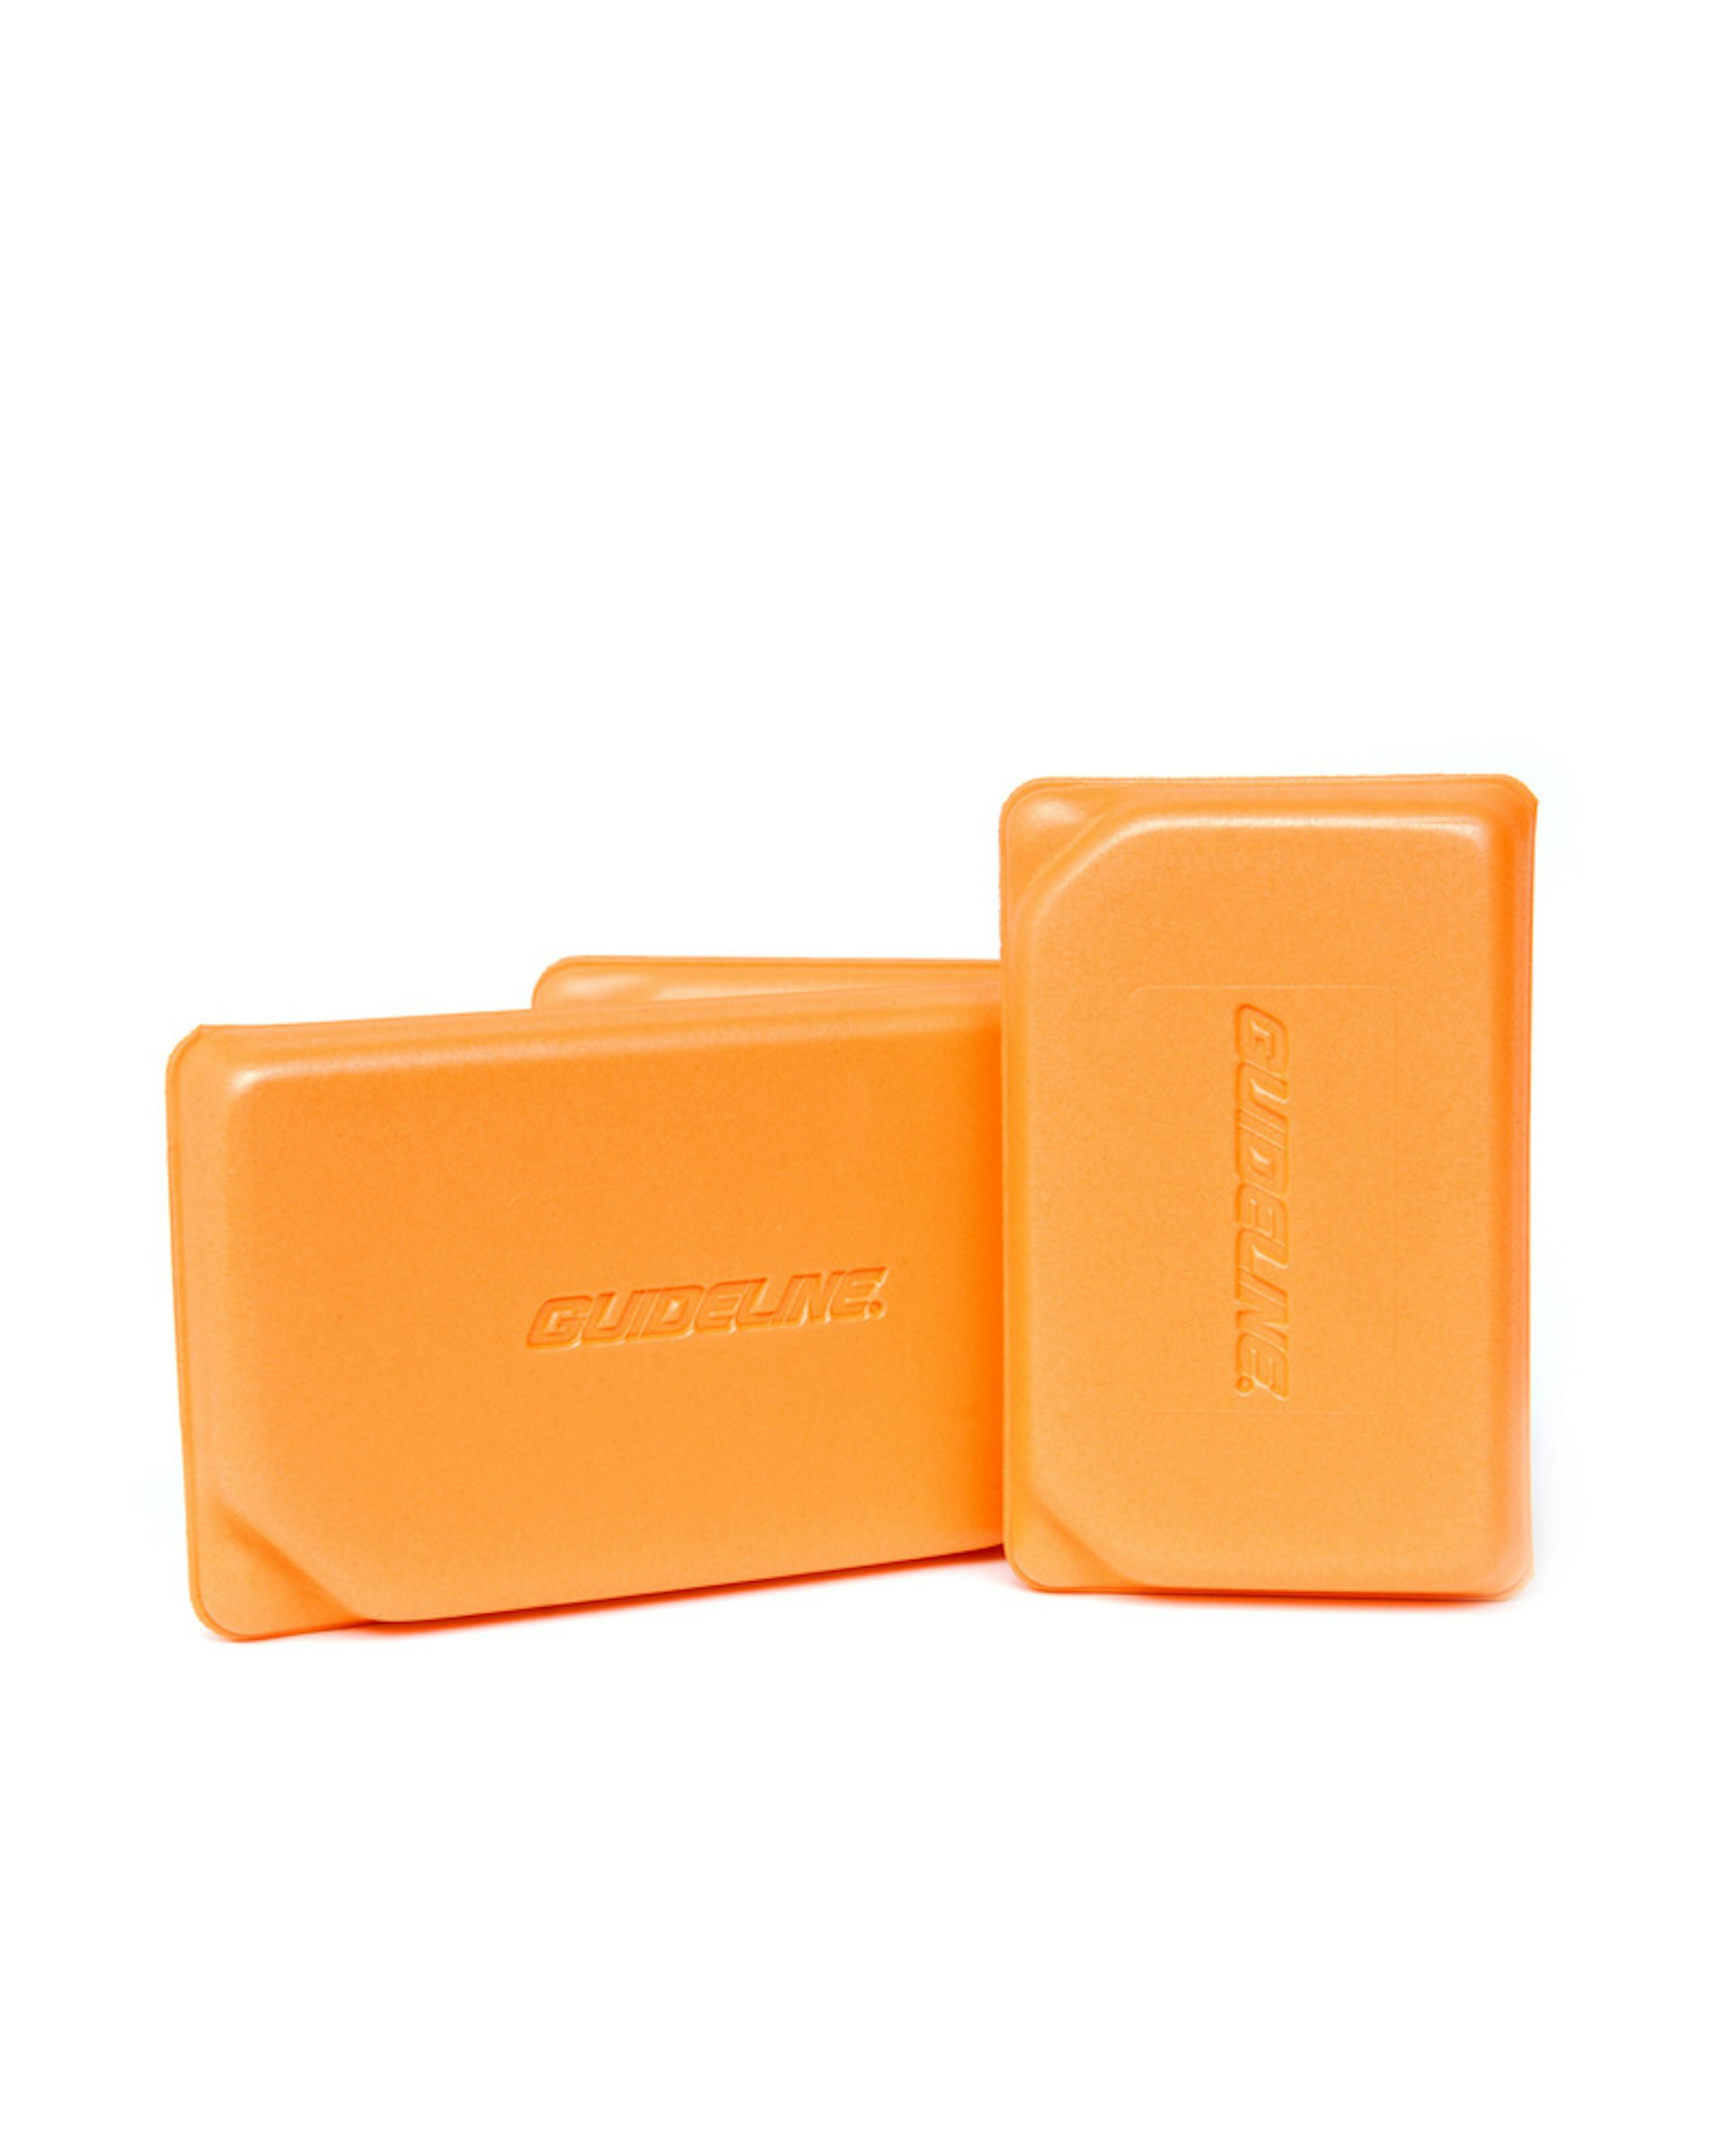 Ultralight Foam Box Orange S (bild 3 av 3)